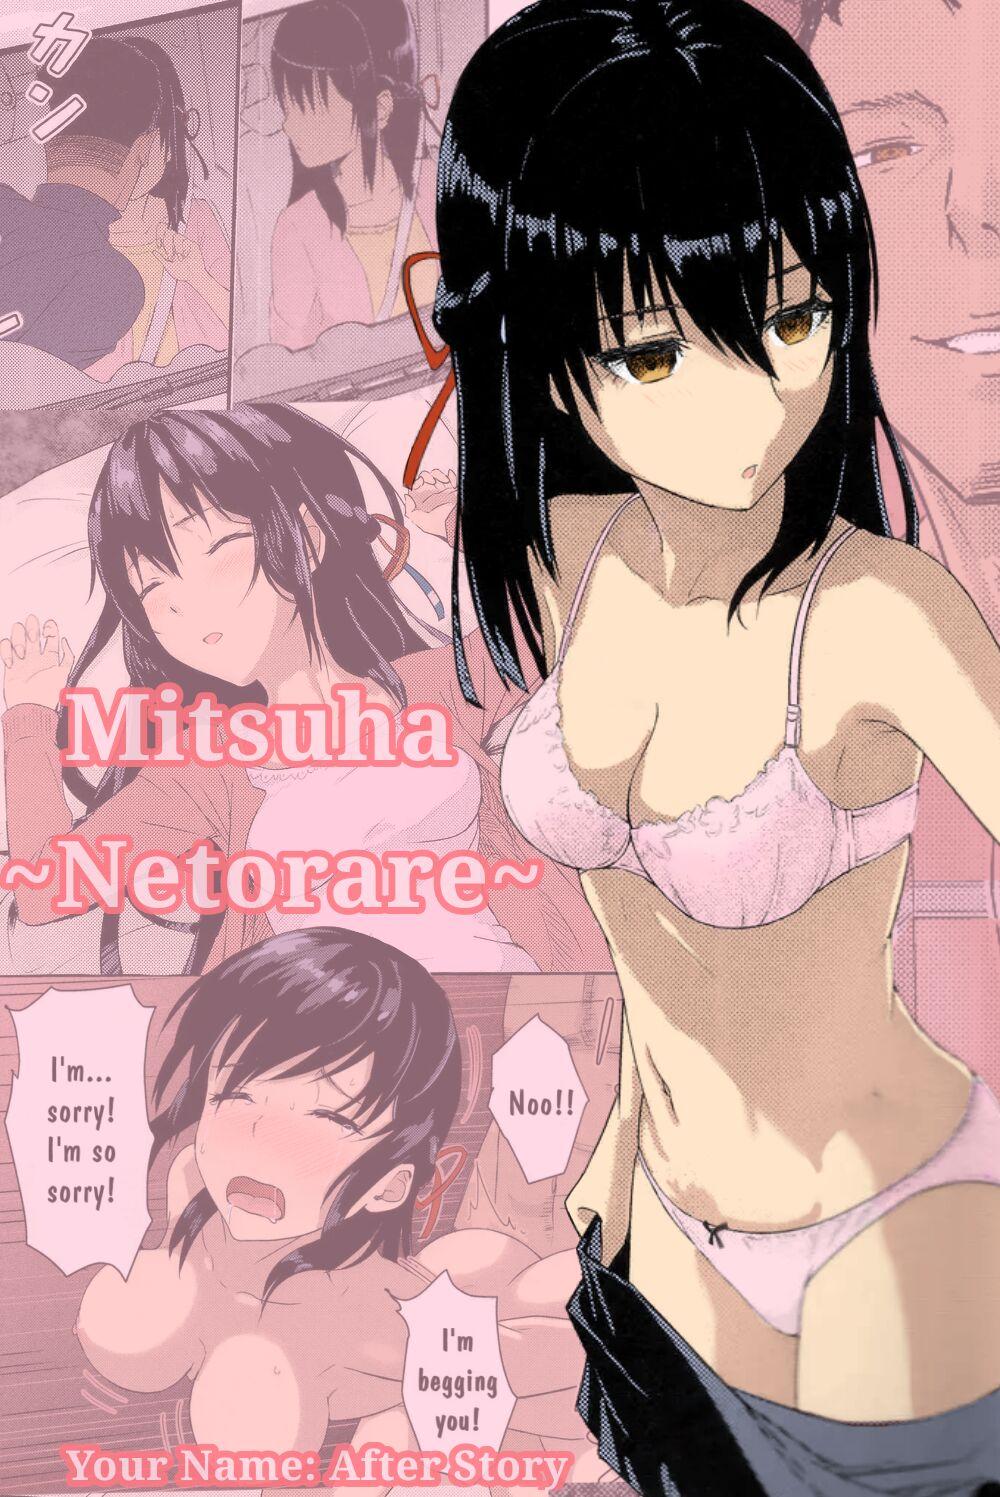 Porn Sluts Kimi no na wa : After Story - Mitsuha - Kimi no na wa. Stepsis - Picture 1